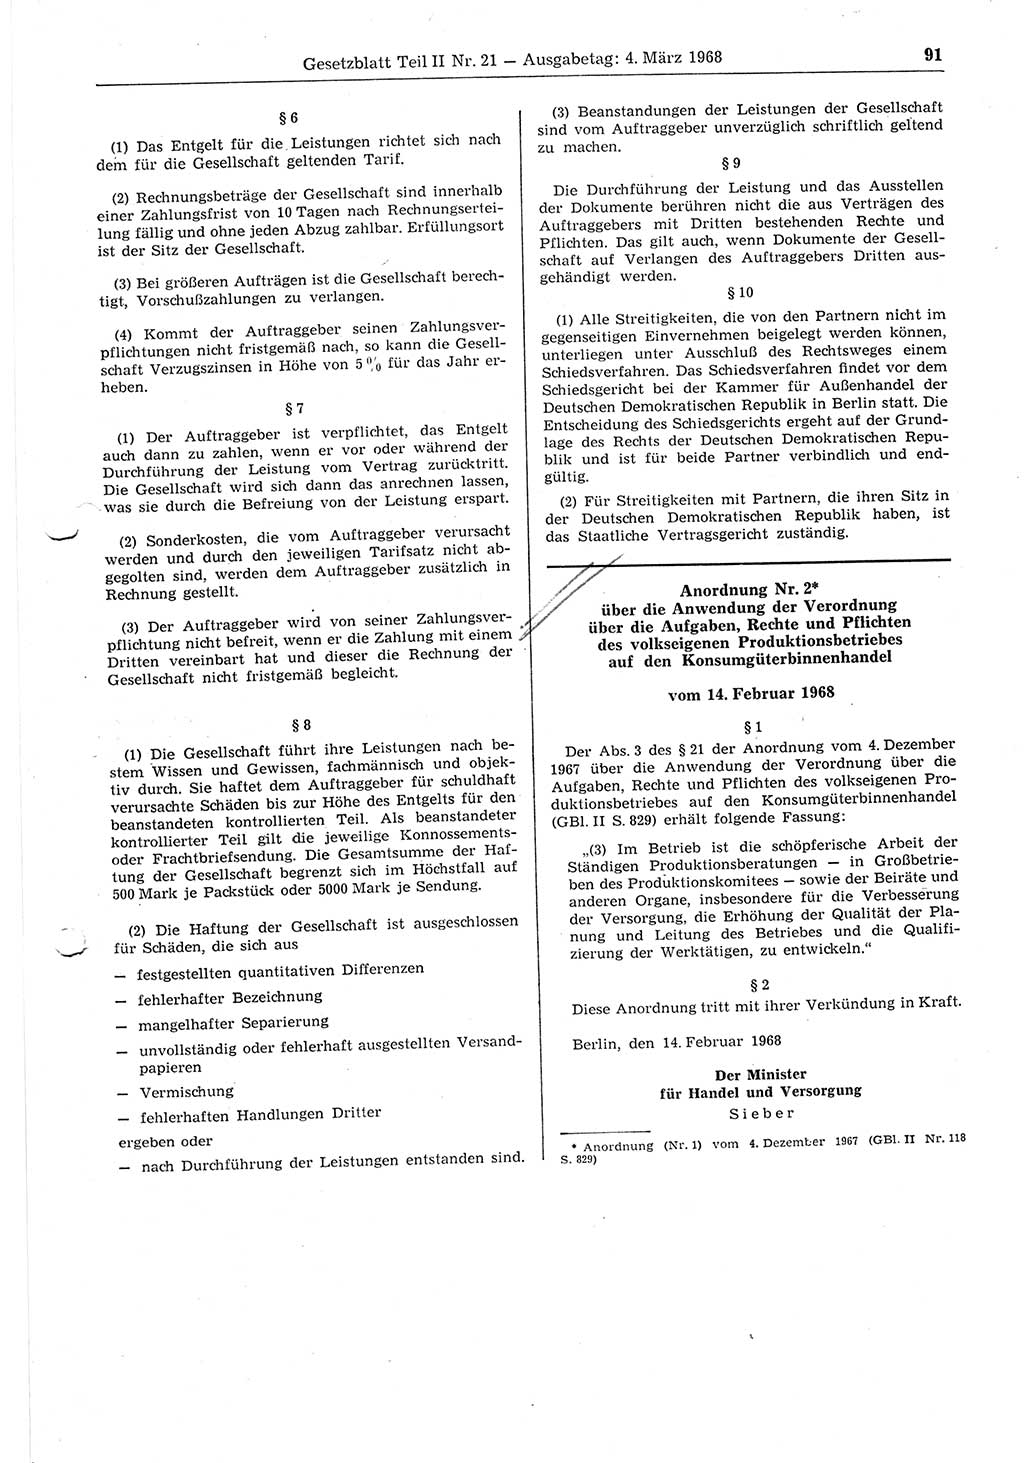 Gesetzblatt (GBl.) der Deutschen Demokratischen Republik (DDR) Teil ⅠⅠ 1968, Seite 91 (GBl. DDR ⅠⅠ 1968, S. 91)